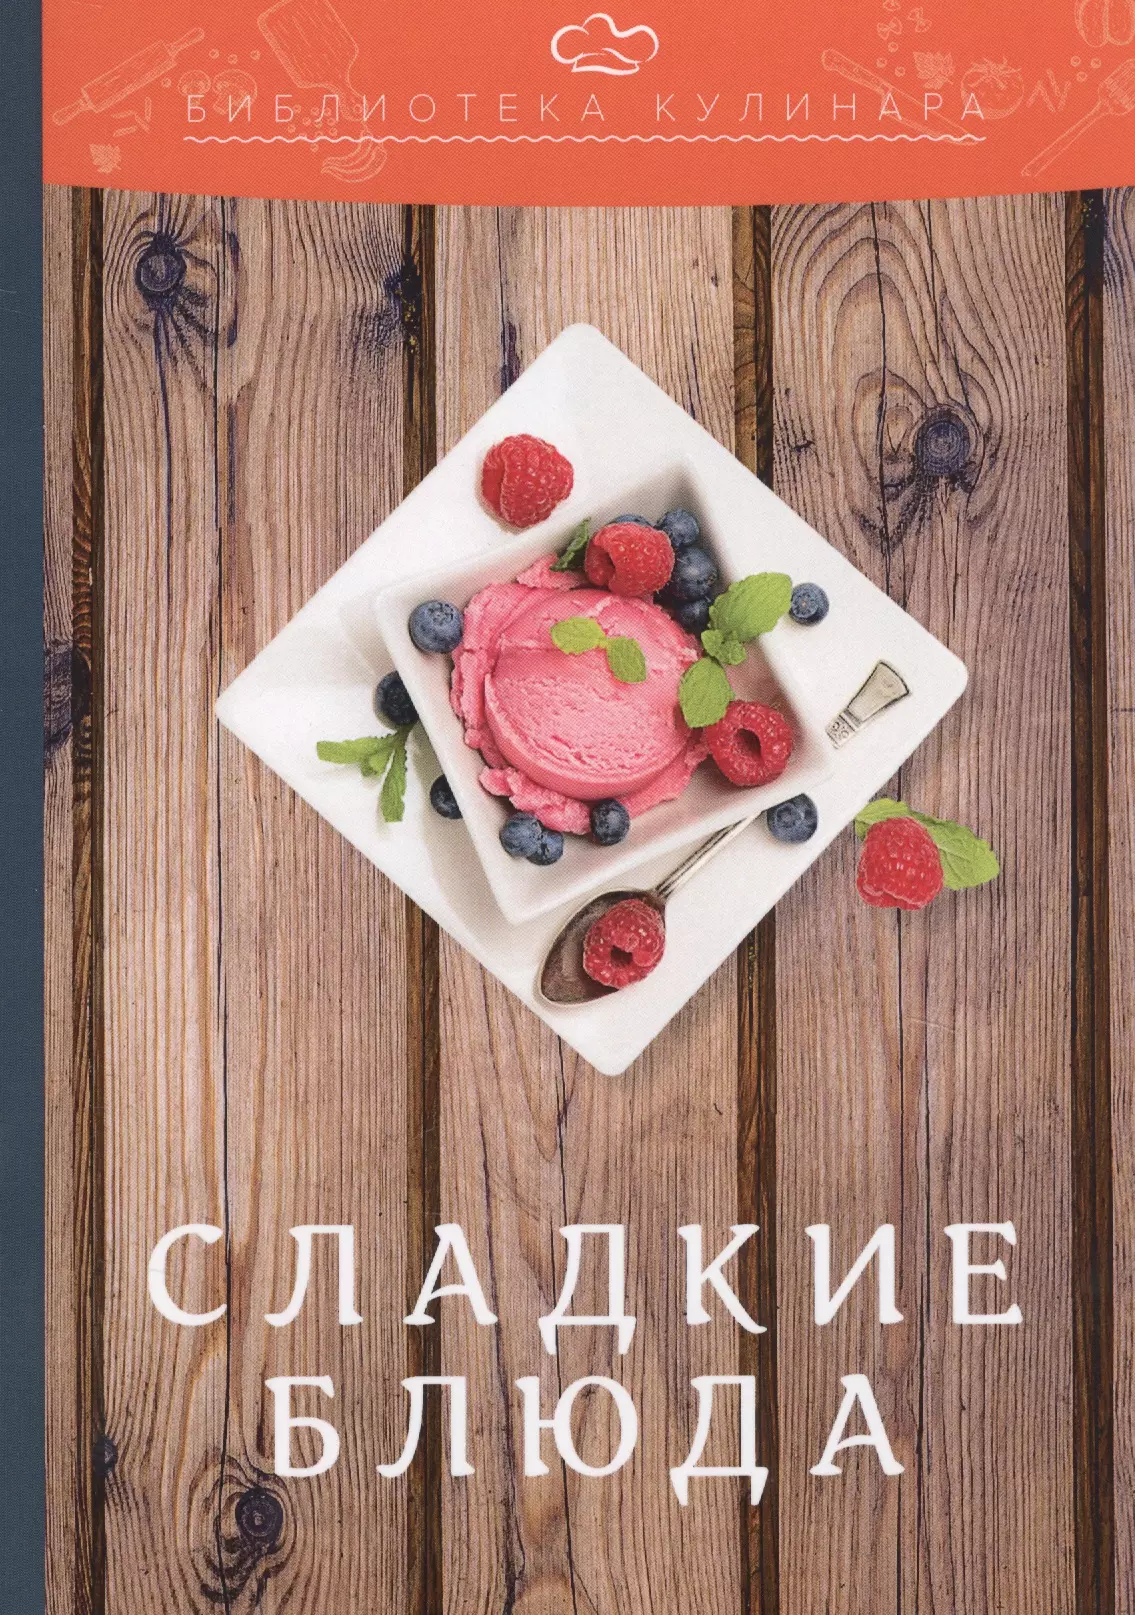 Ратушный Александр Сергеевич - Сладкие блюда: производственно-практическое издание